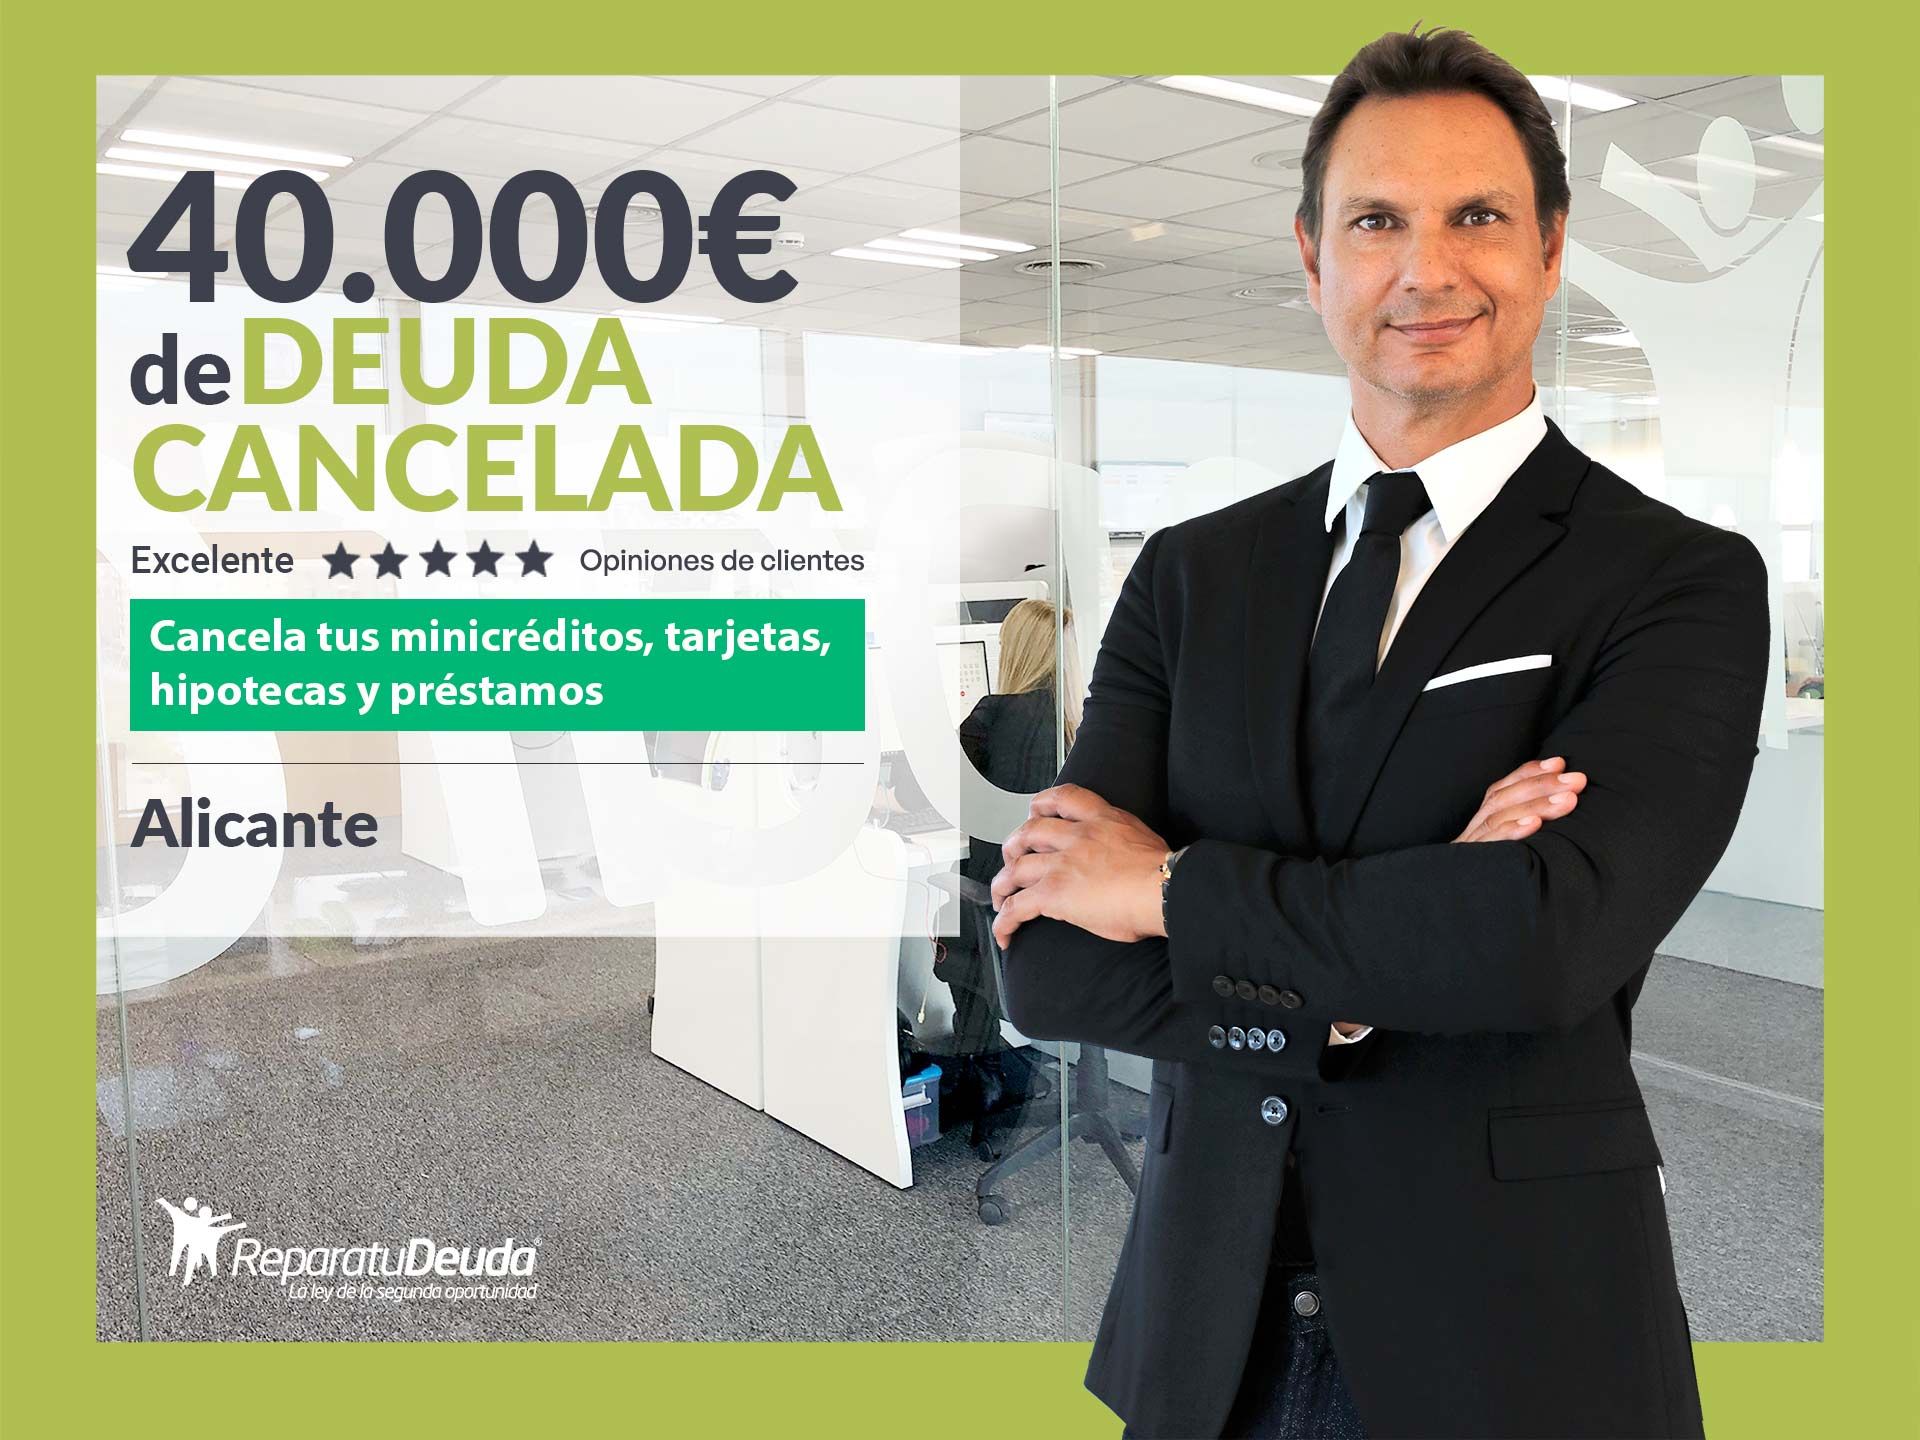 Repara tu Deuda cancela 40.000? en Alicante (Comunidad Valenciana) con la Ley de Segunda Oportunidad